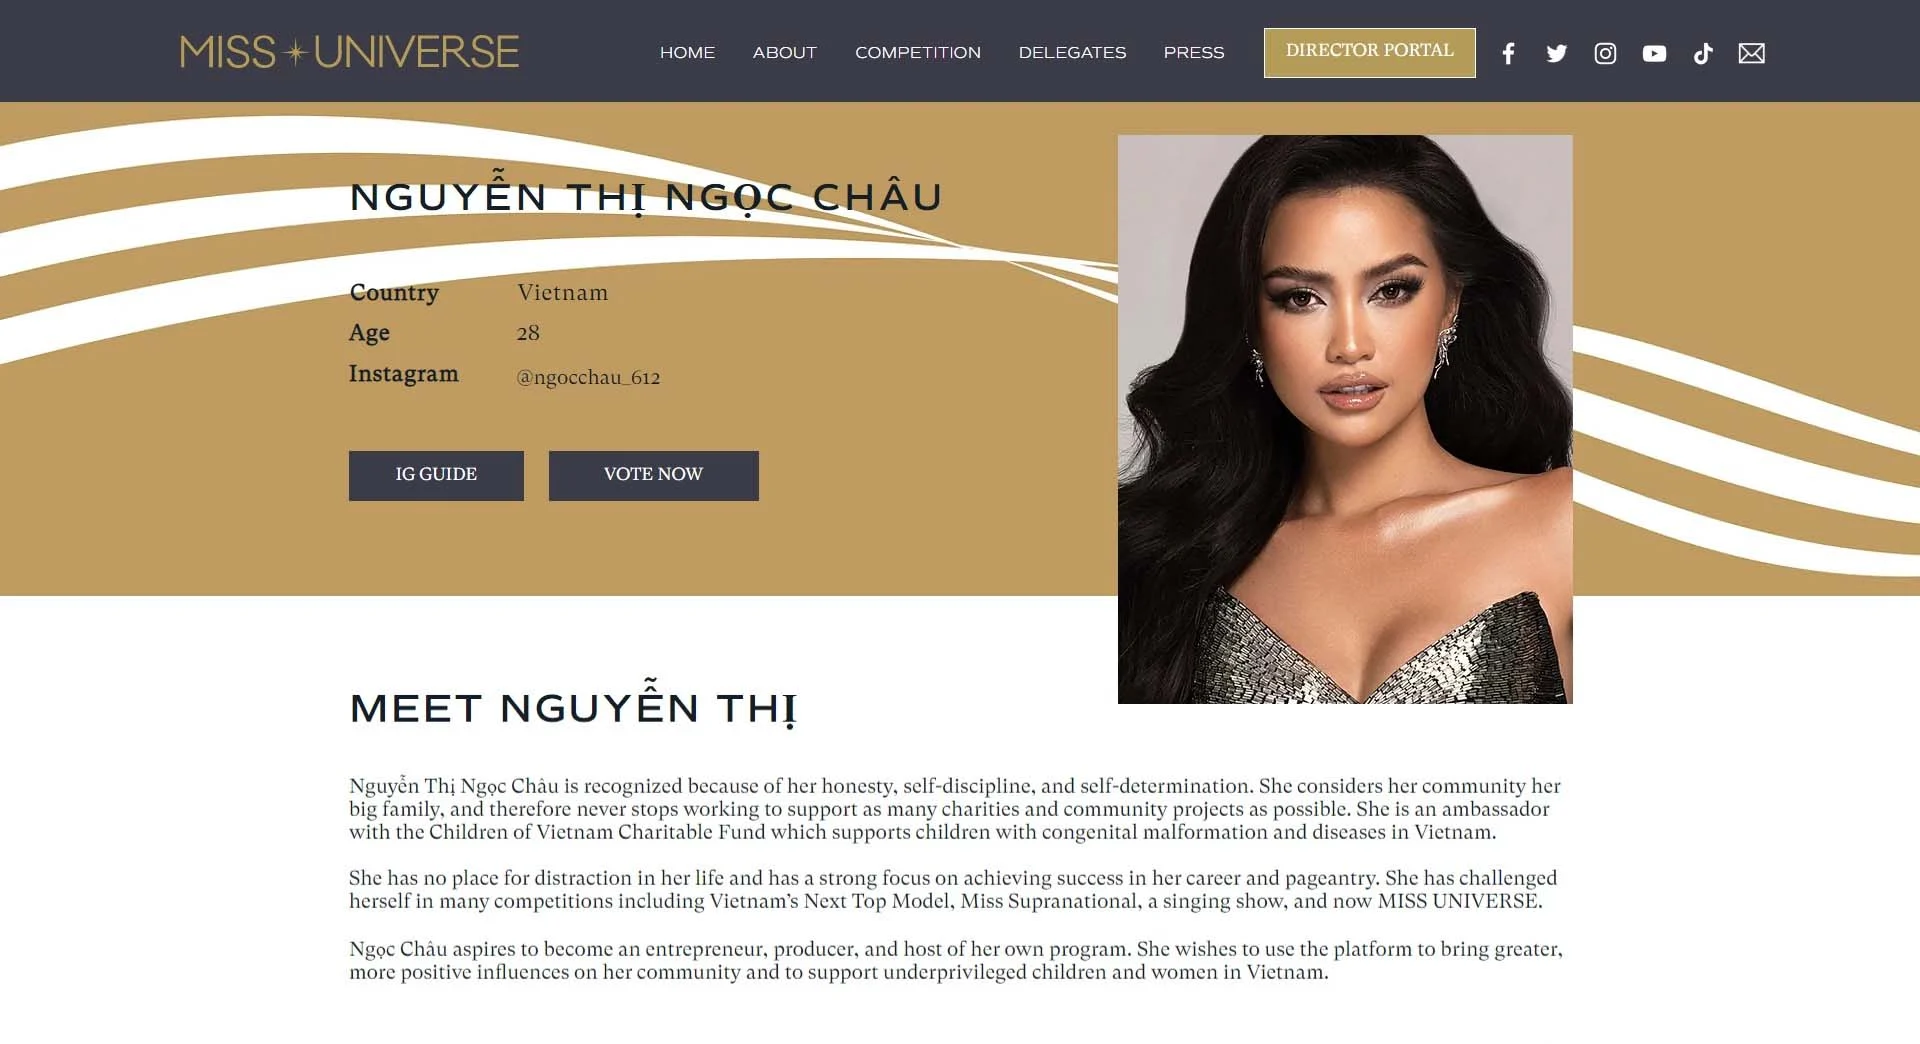 Hình ảnh profile của Hoa hậu Ngọc Châu chính thức xuất hiện trên trang chủ Miss Universe